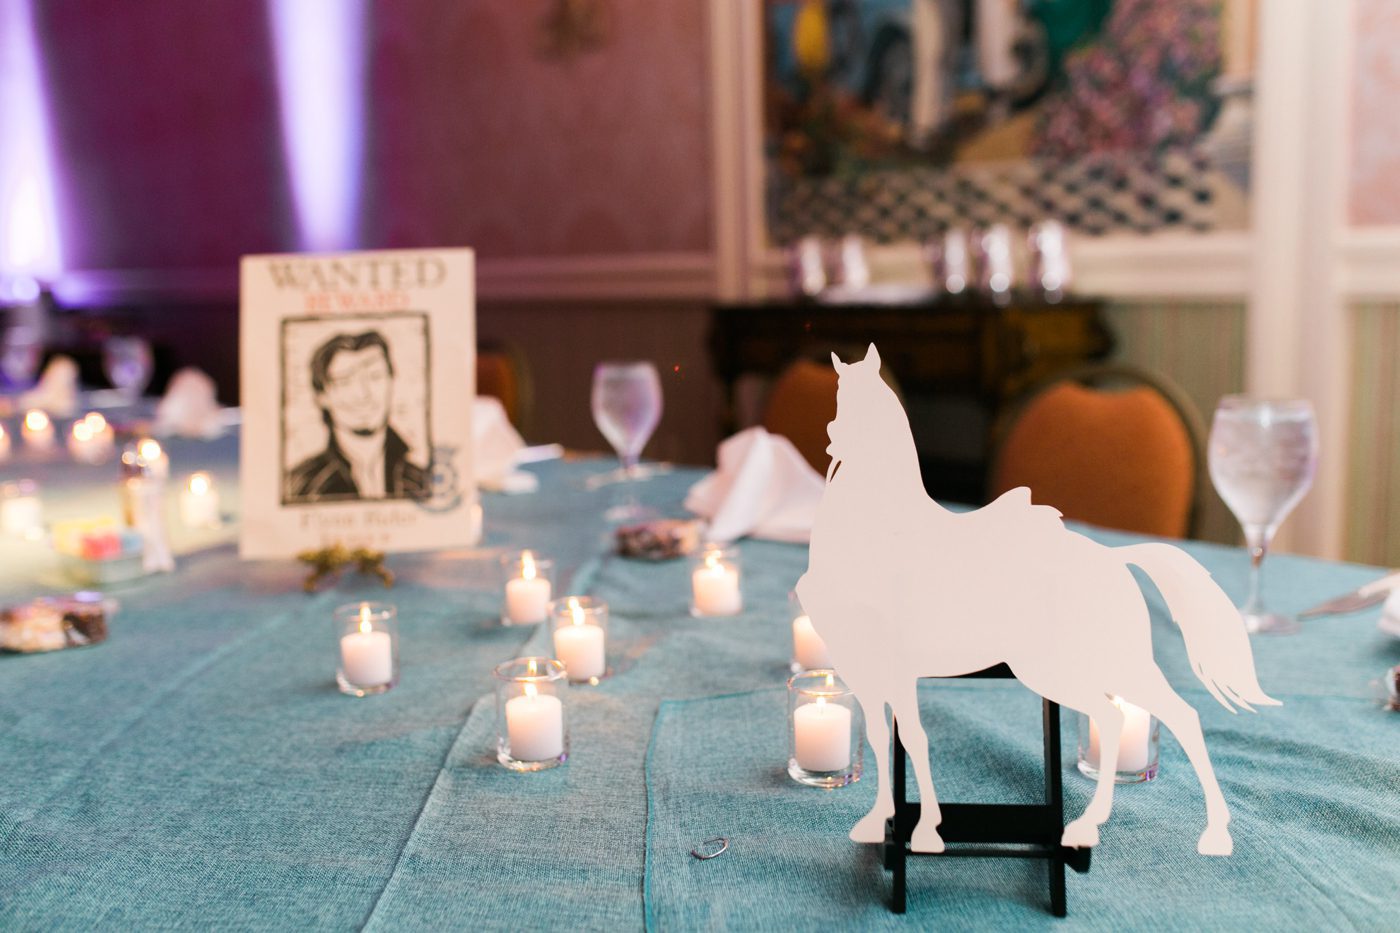 Flynn Rider reception decor with Maximus cutout 